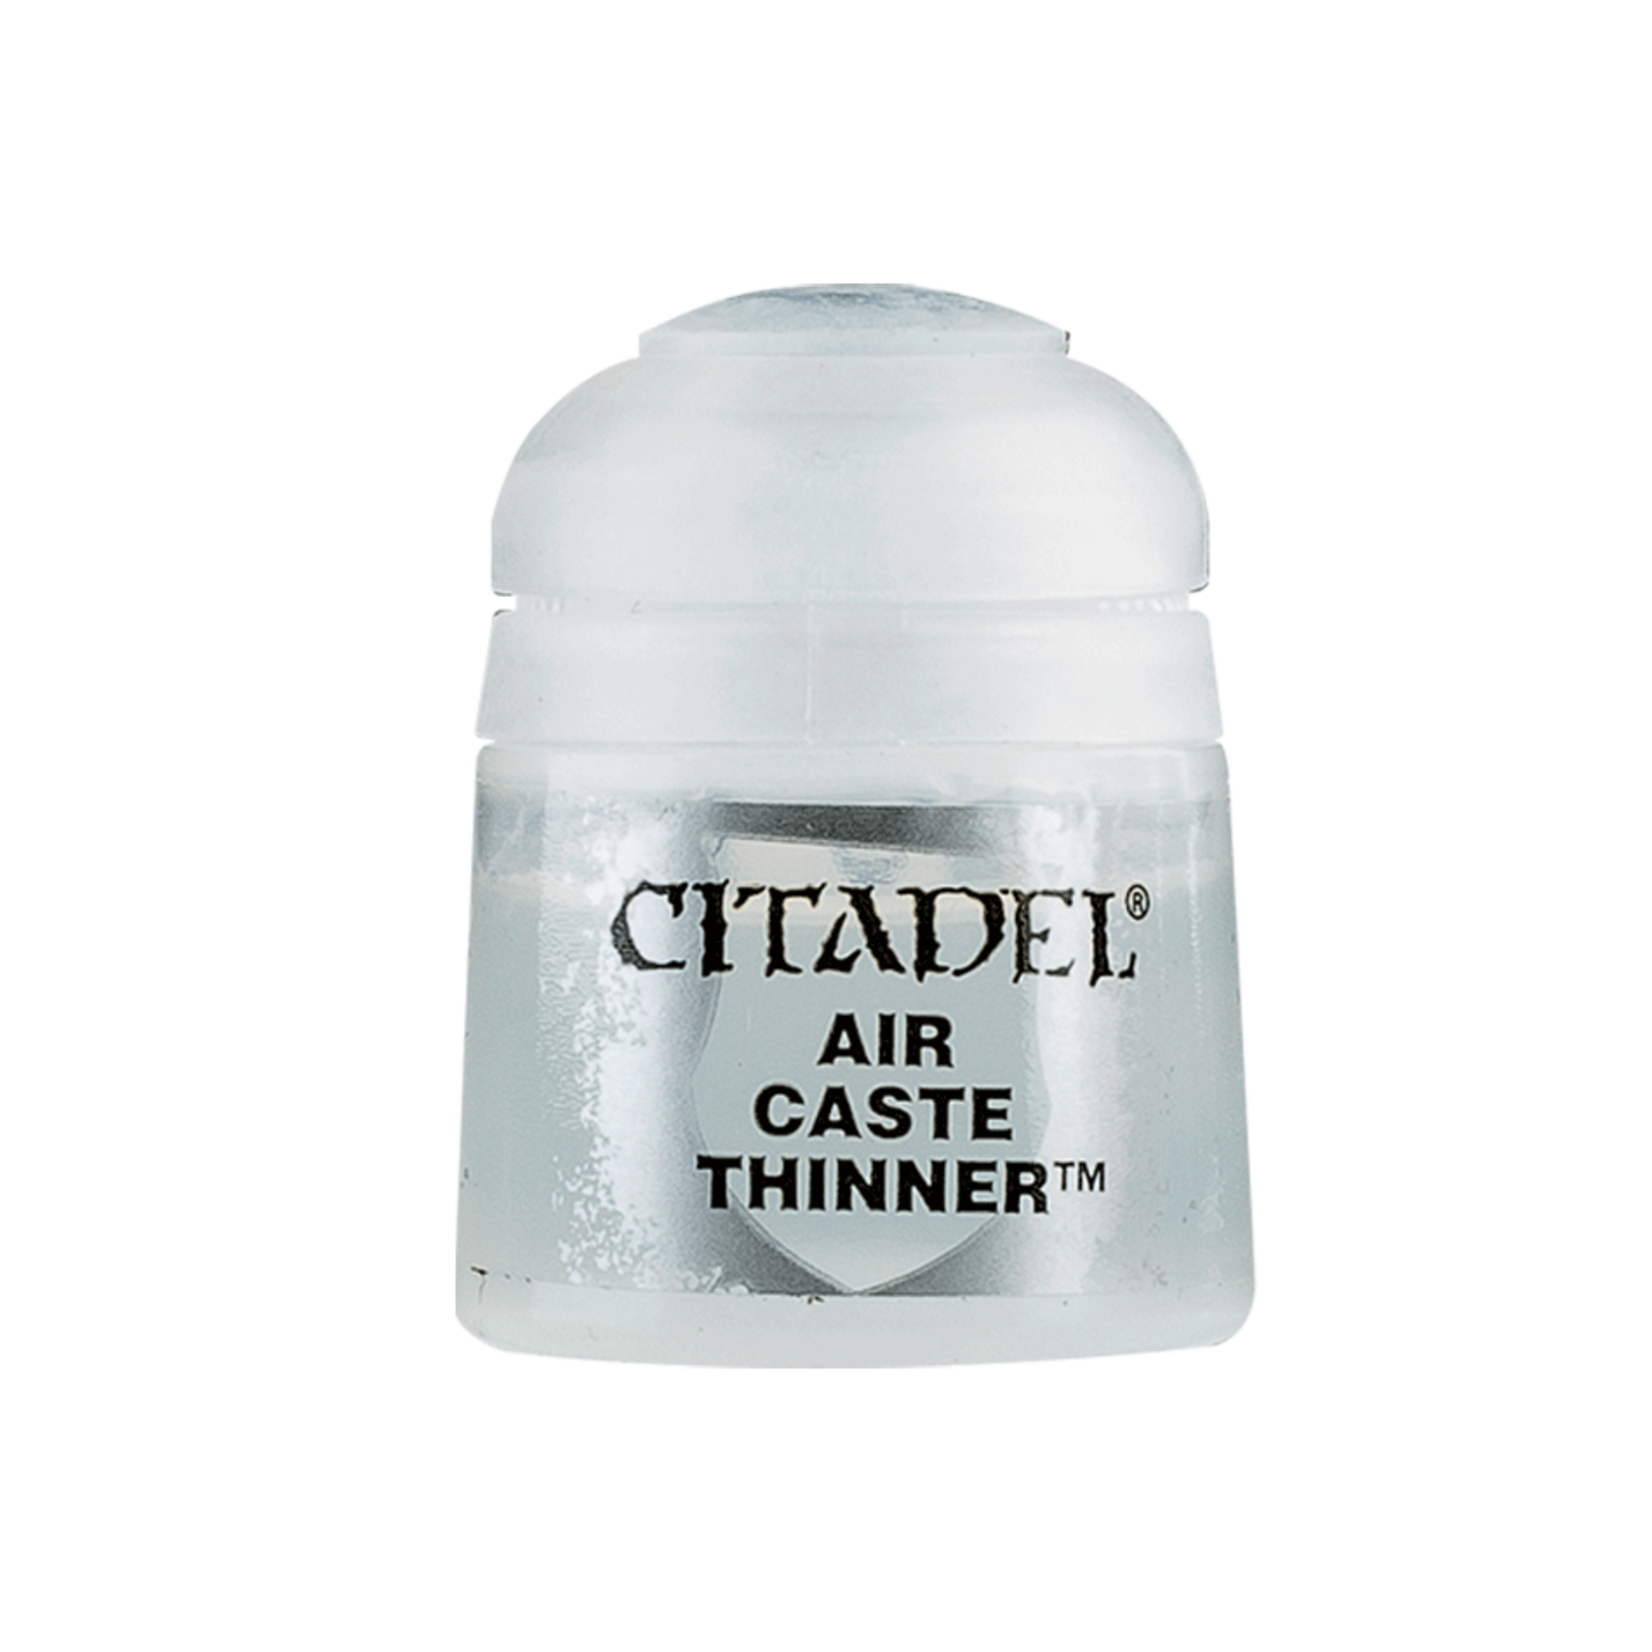 Citadel Air Caste Thinner (Air 24ml)